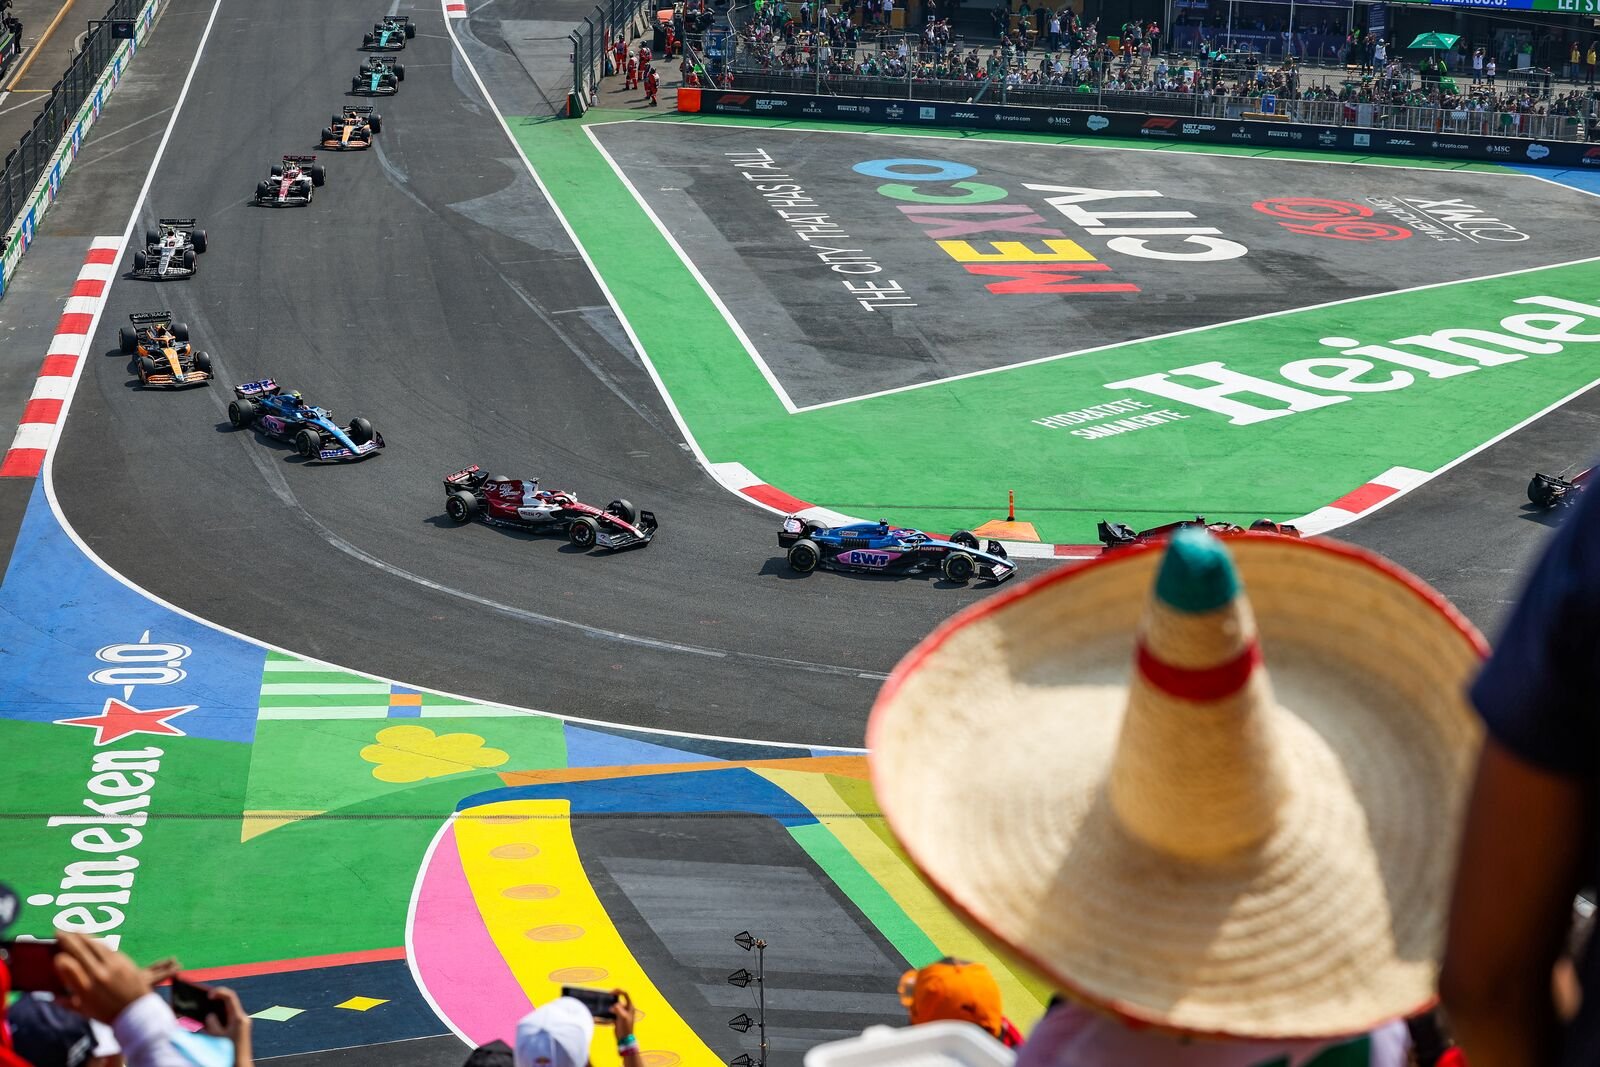 Preview do GP do México – A segunda perna de uma rodada tripla nas Américas  • BP • Boletim do Paddock • O lado nerd do automobilismo